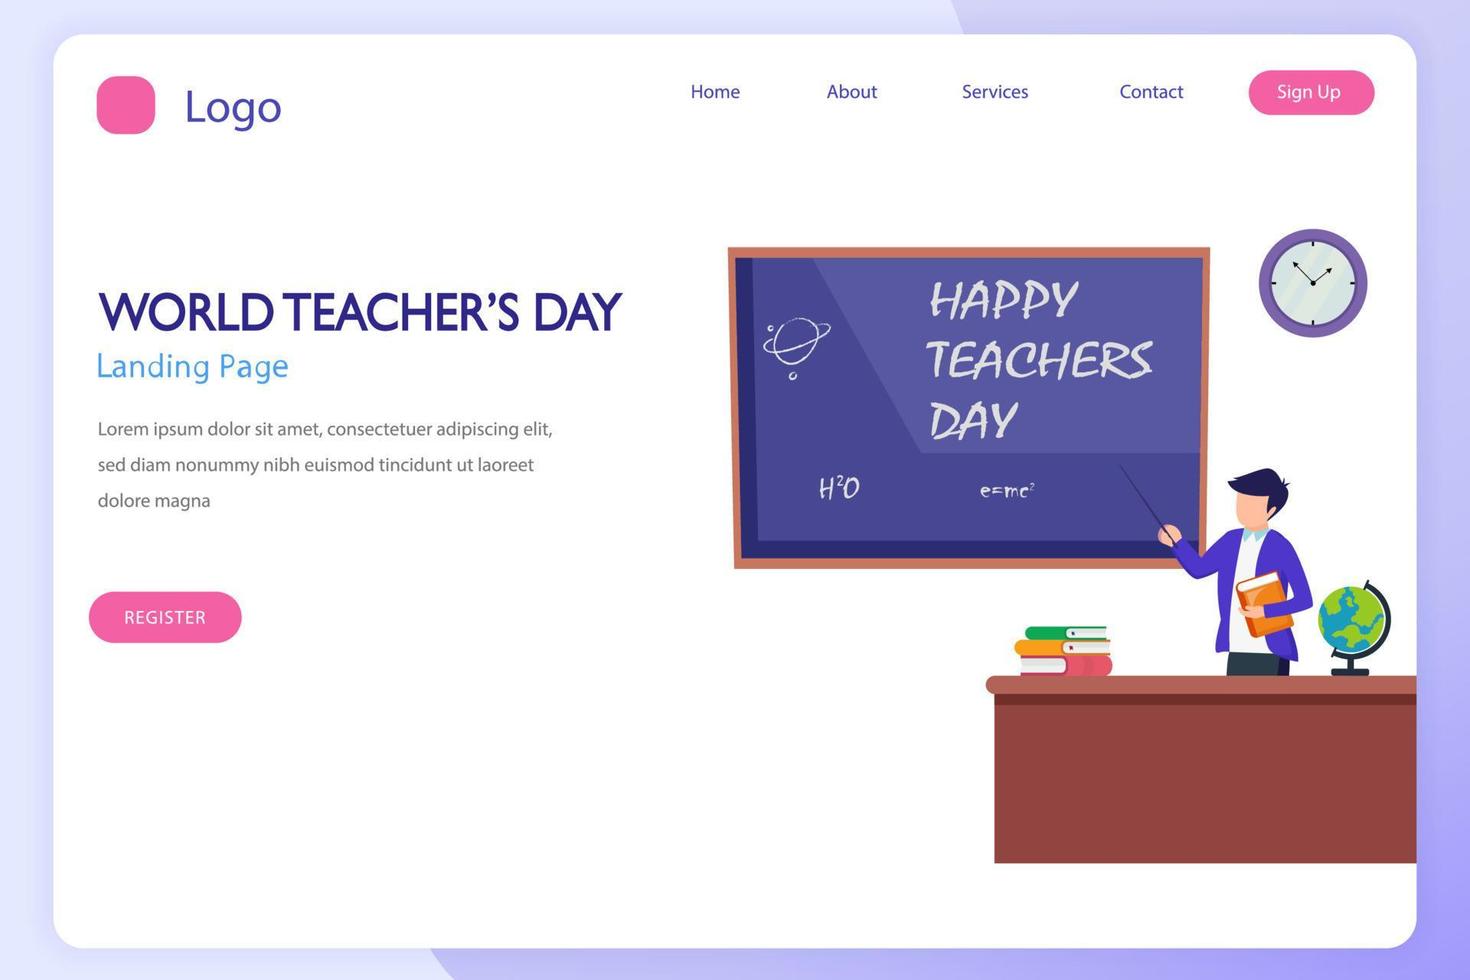 insieme dell'icona della giornata mondiale degli insegnanti. stile modello vettoriale piatto adatto per la pagina di destinazione web.